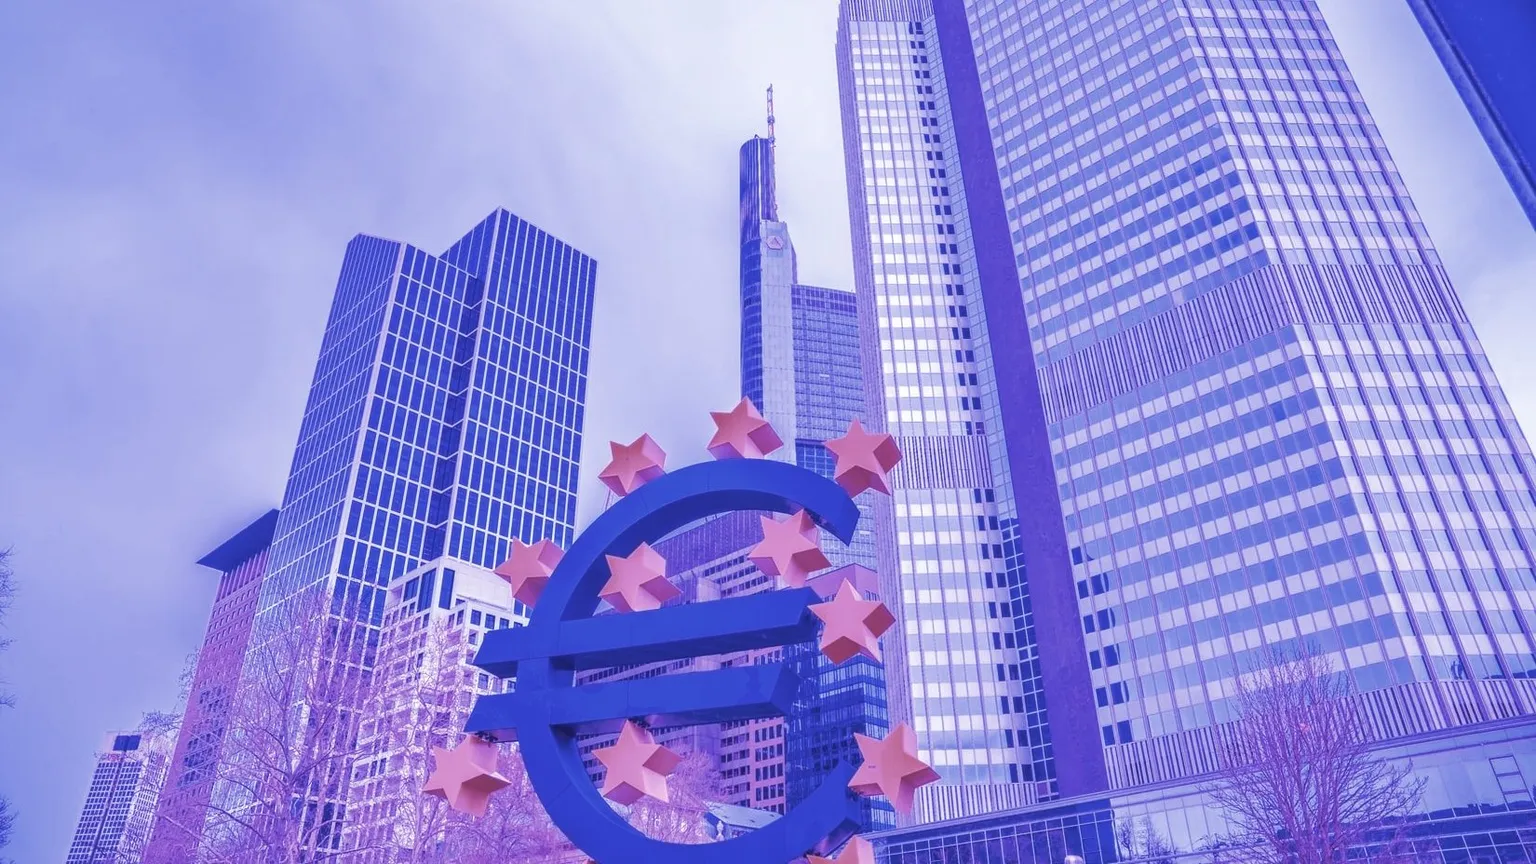 The European Central Bank is based in Frankfurt. Image: Unsplash